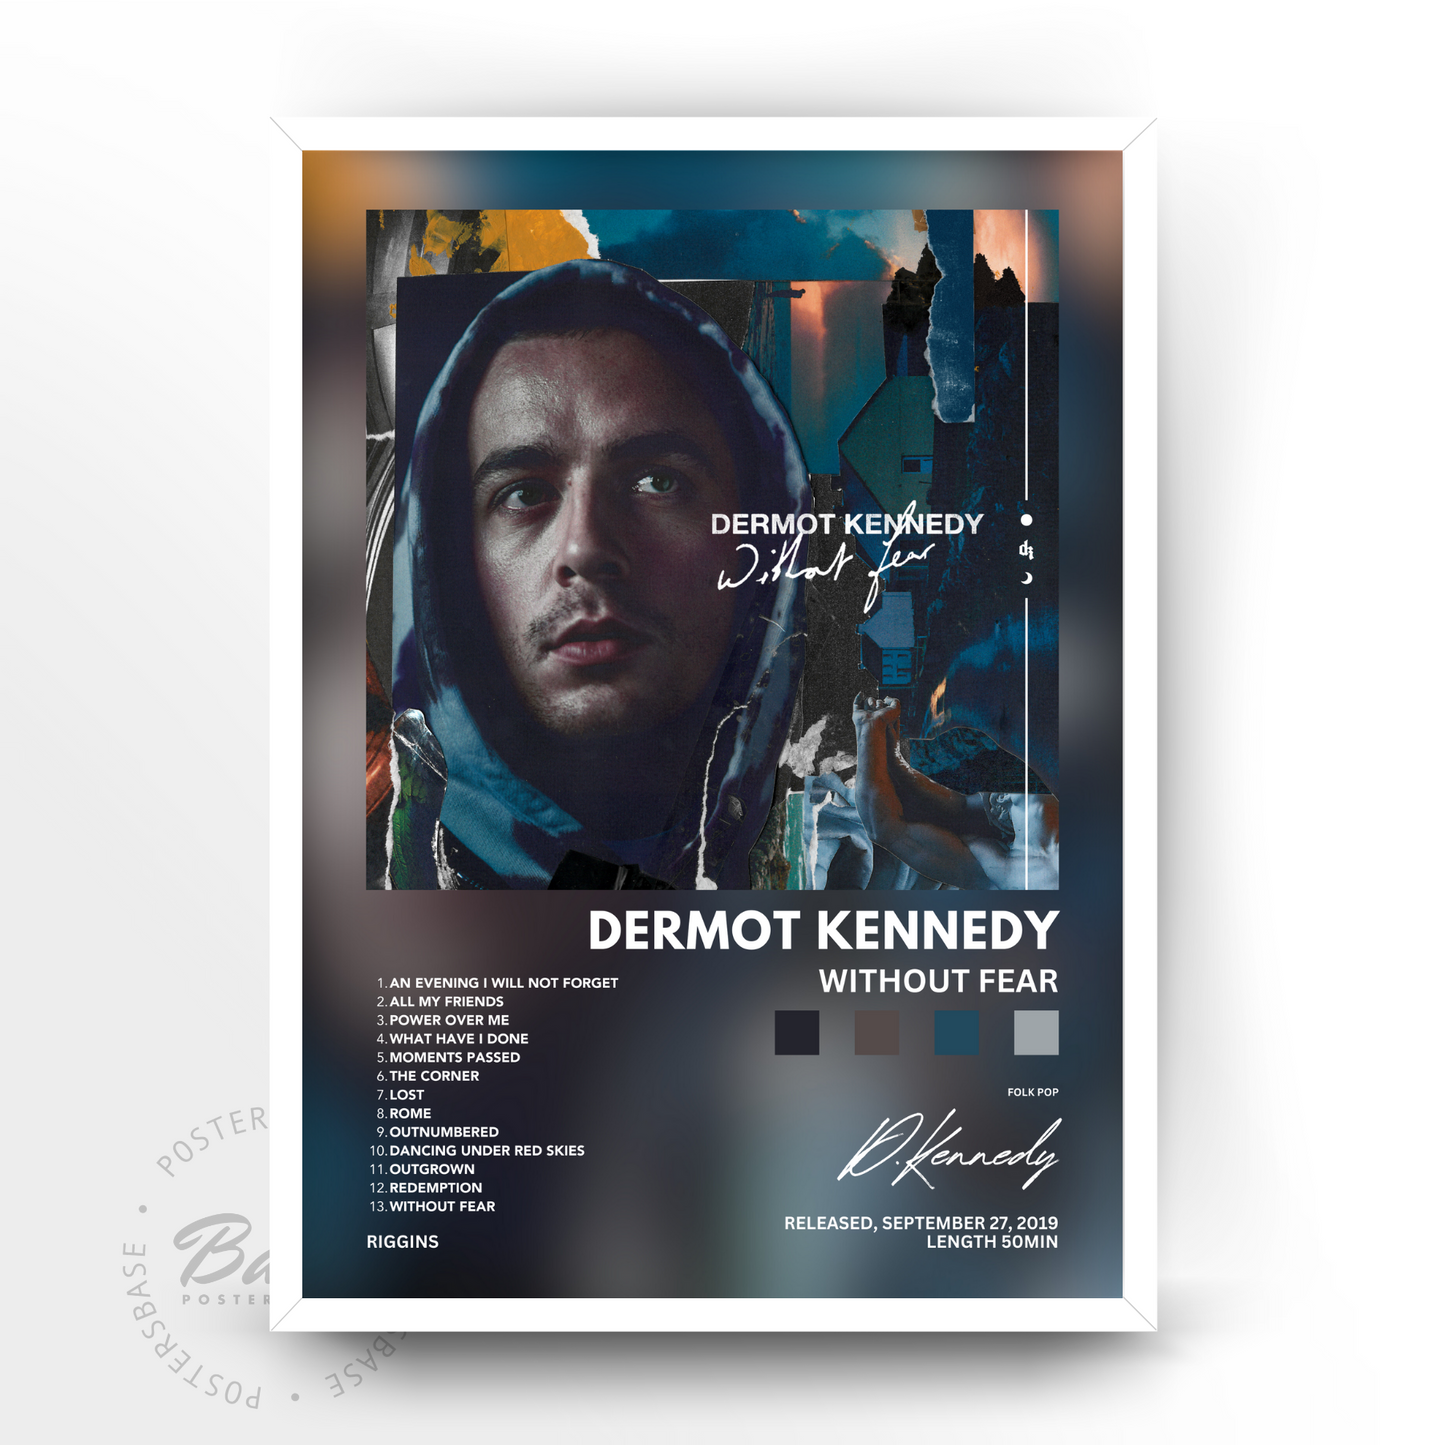 Dermot Kennedy 'Without Fear'